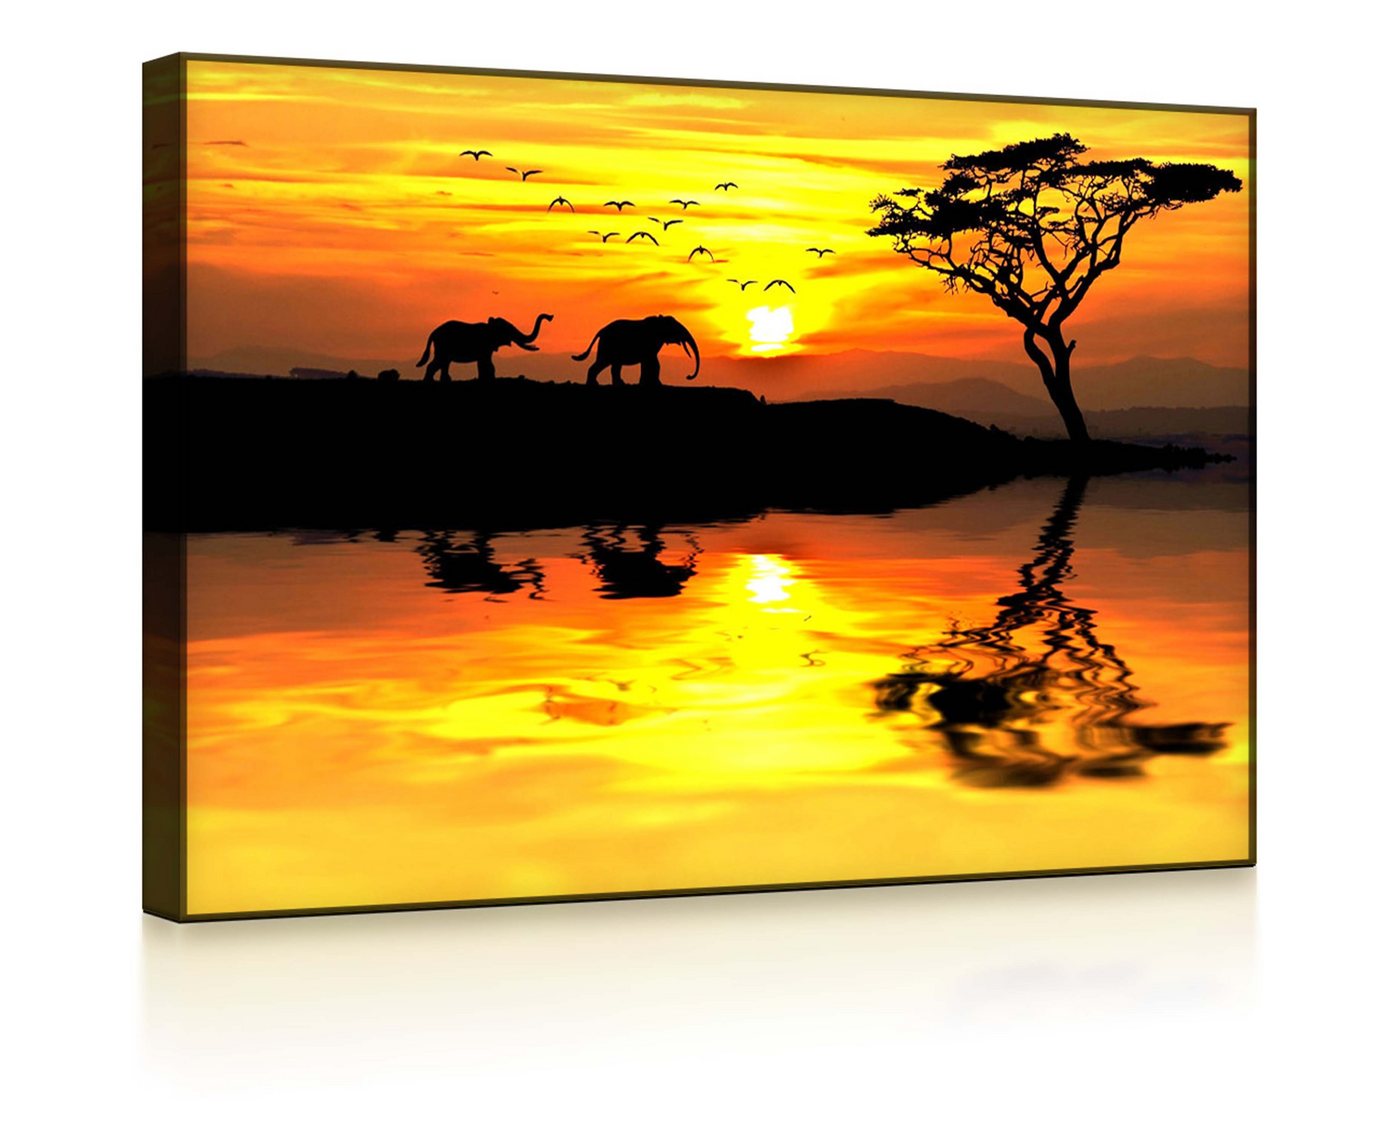 lightbox-multicolor LED-Bild Elefanten in afrikanischer Steppe front lighted / 60x40cm, Leuchtbild mit Fernbedienung von lightbox-multicolor